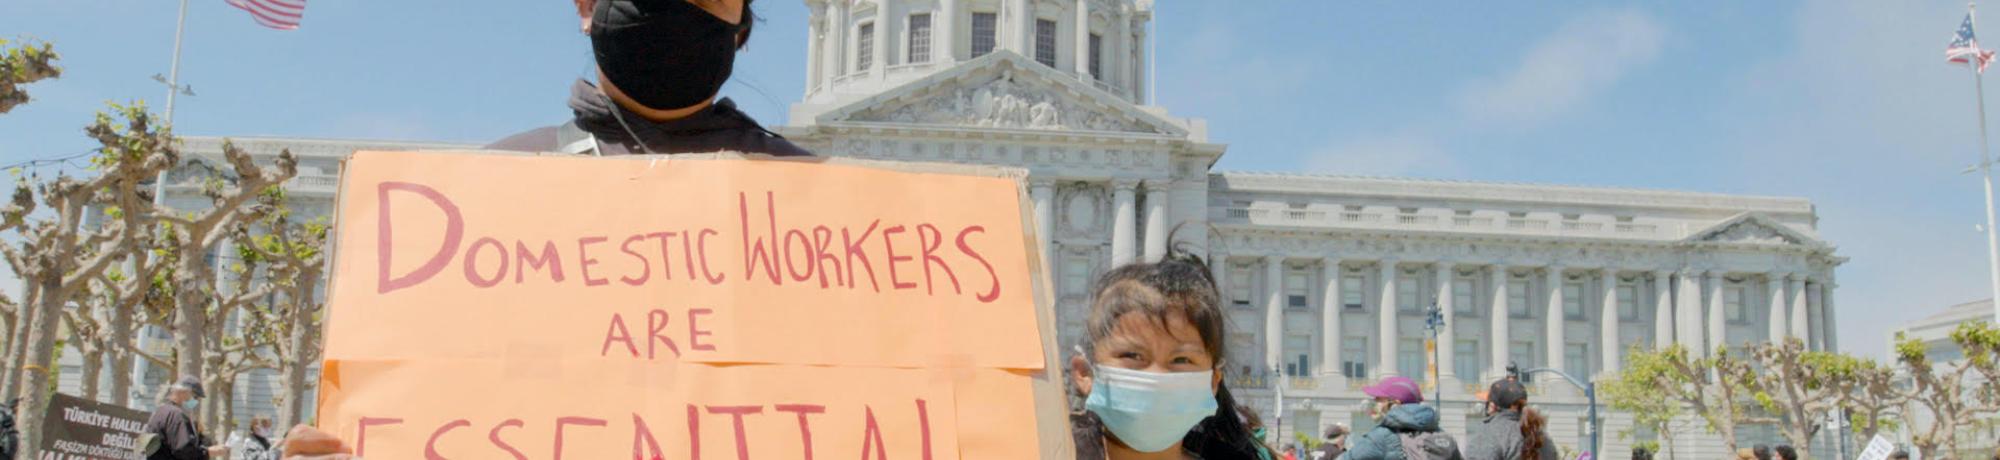 Mjer mostrando un cartel que dice que los trabajadores domesticos son esenciales